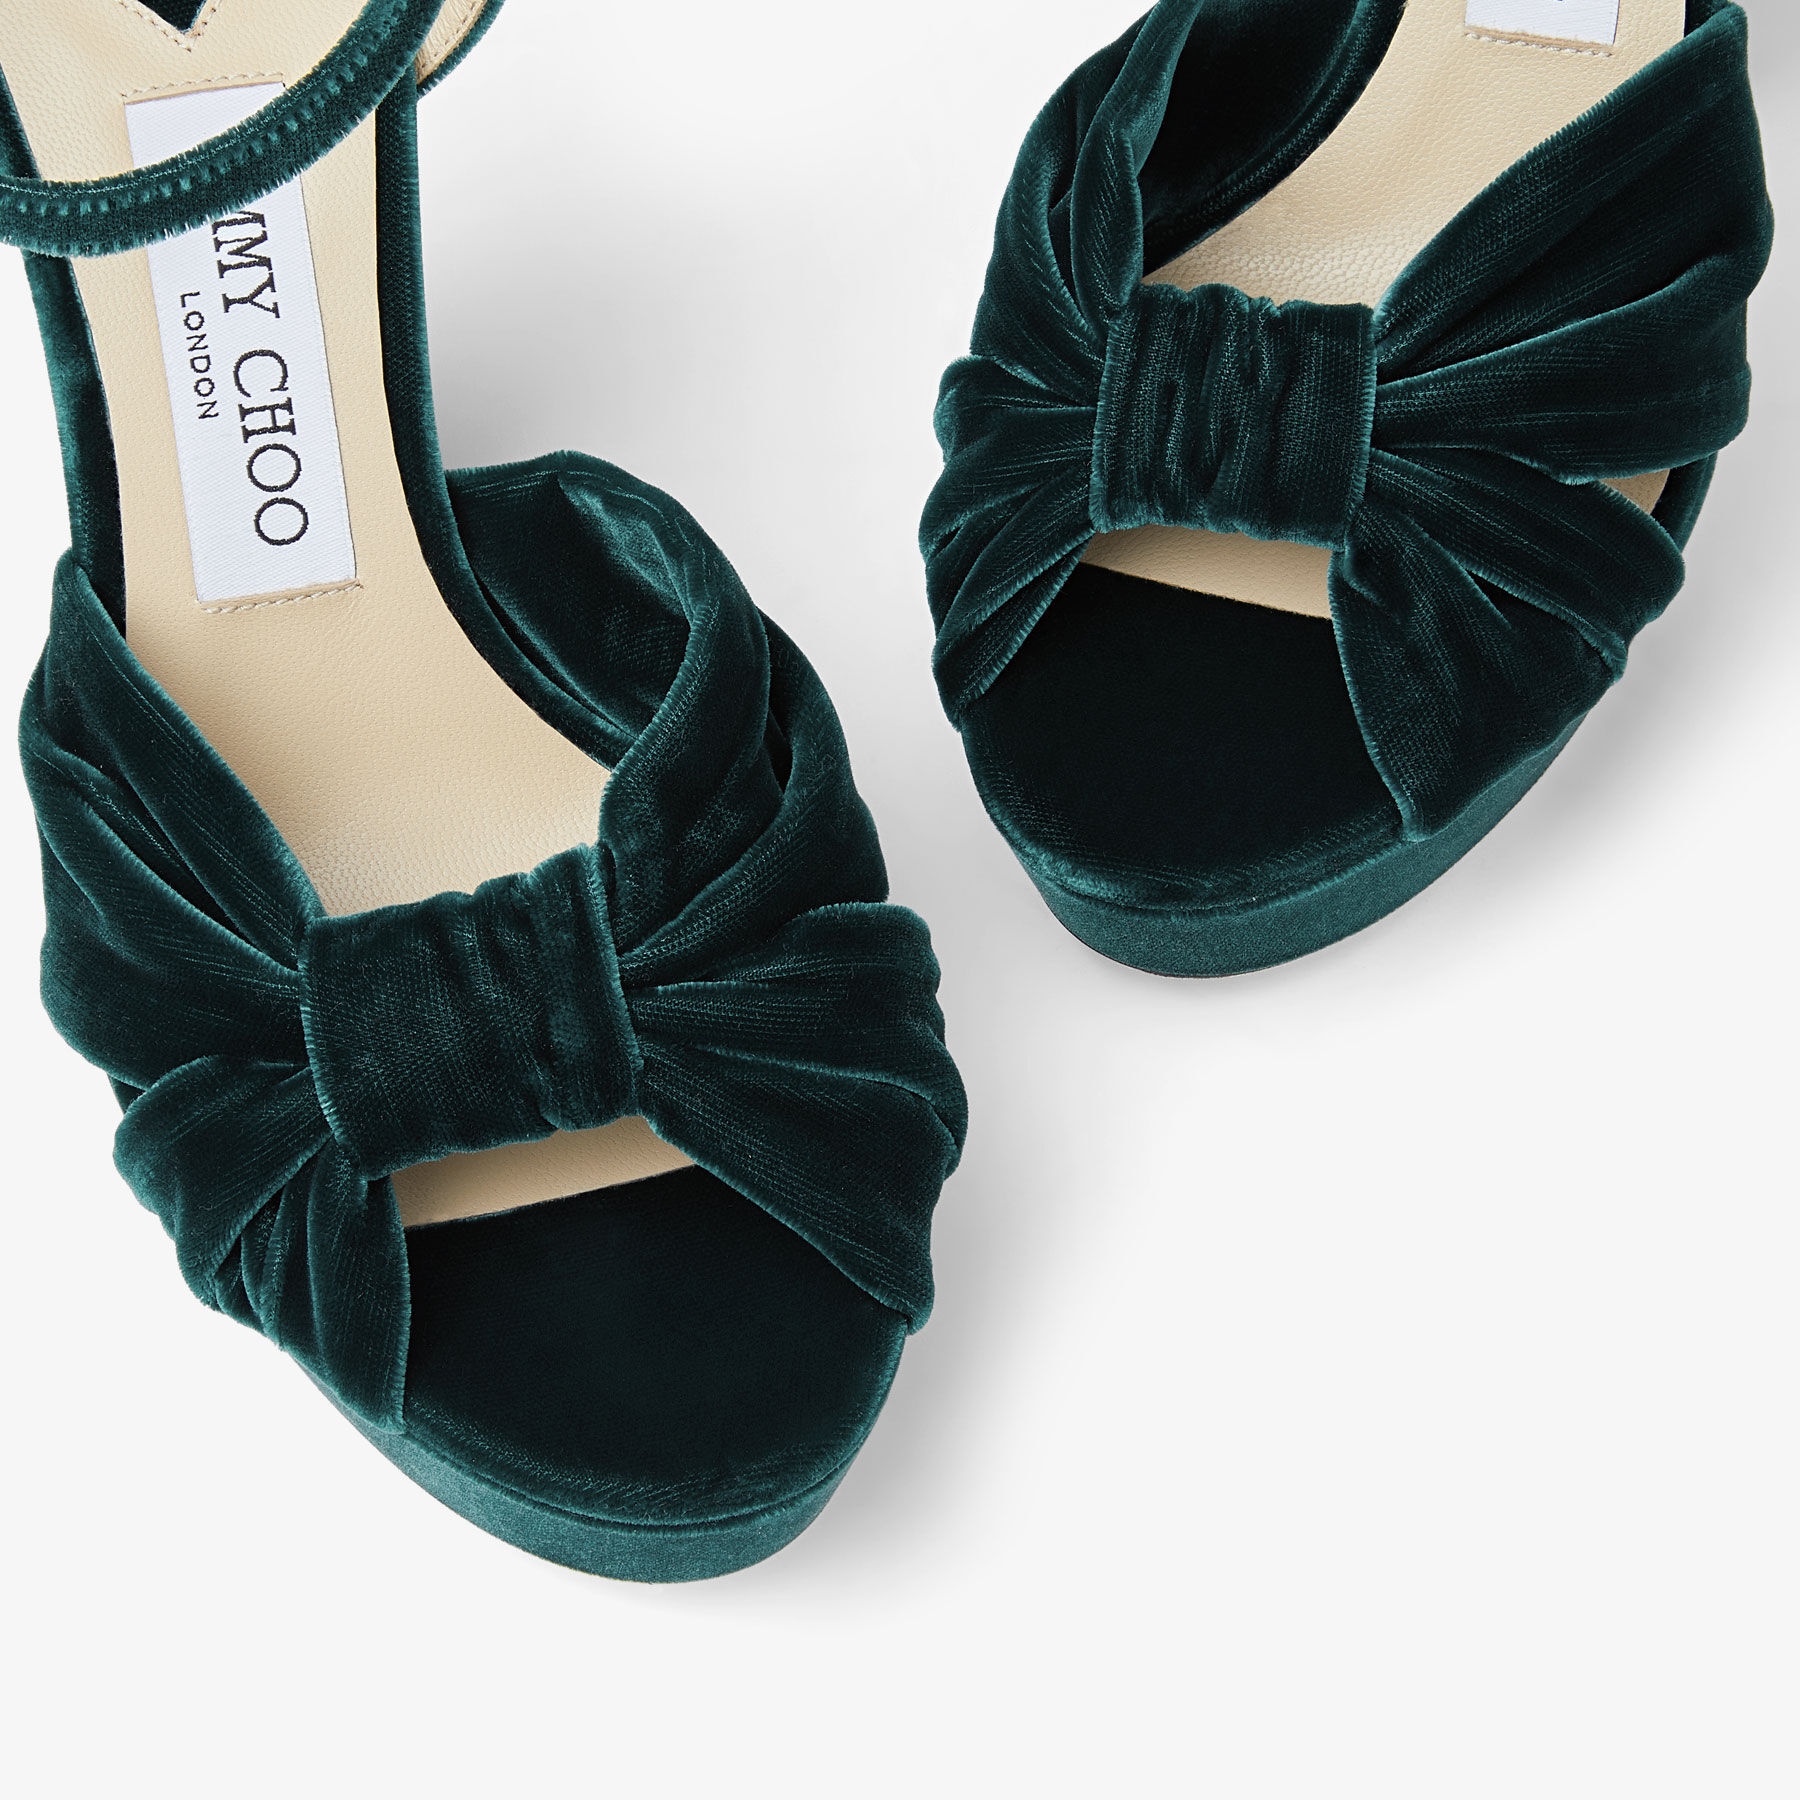 Heloise 120
Dark Green Velvet Platform Sandals - 4